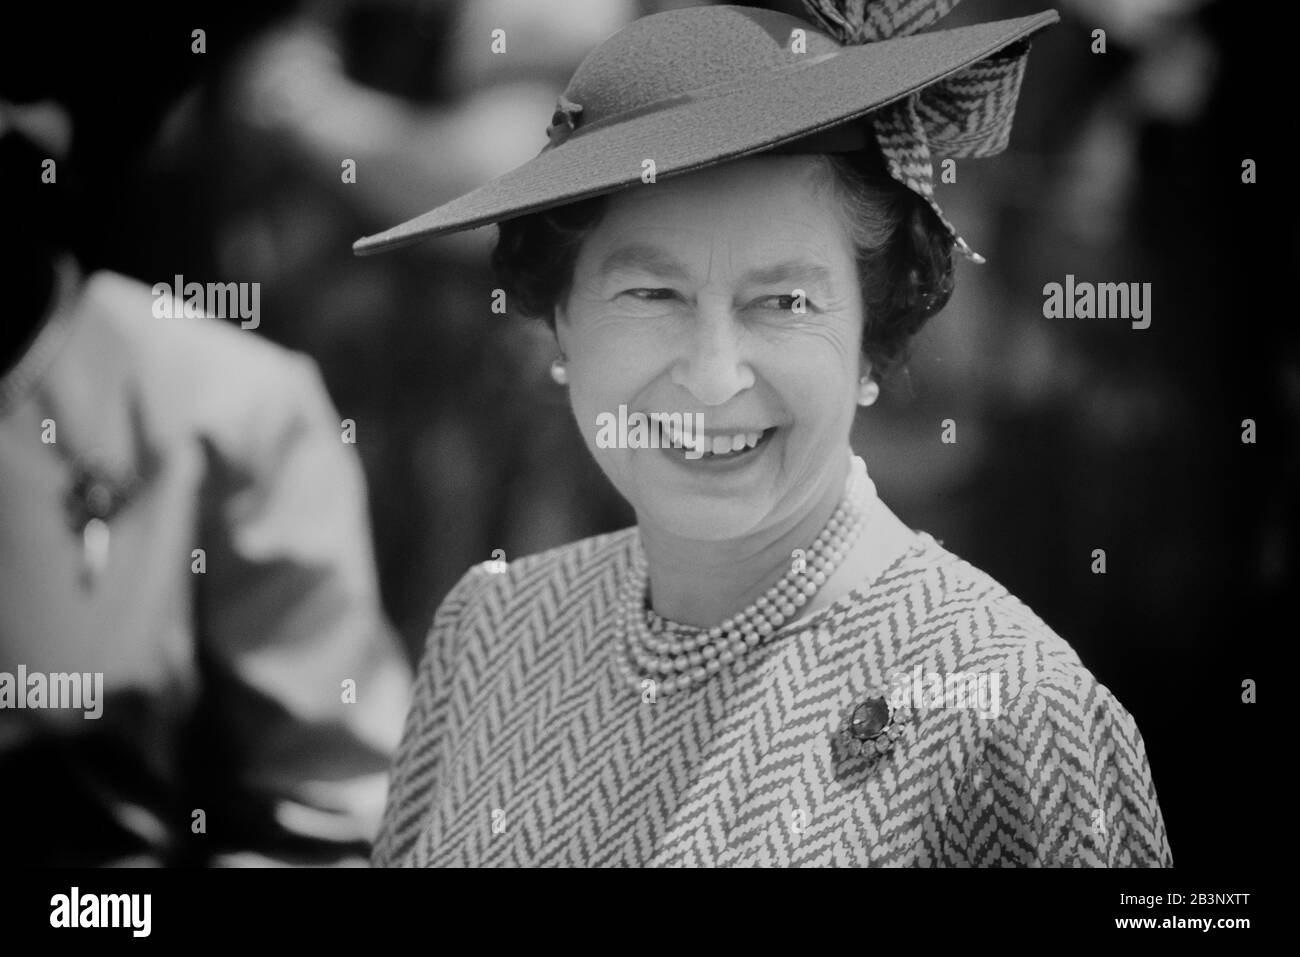 Un HM souriant, la reine Elizabeth II, portant un chapeau de Milliner Philip Somerville. Visite royale à la Barbade du 8 au 11 mars 1989 Banque D'Images